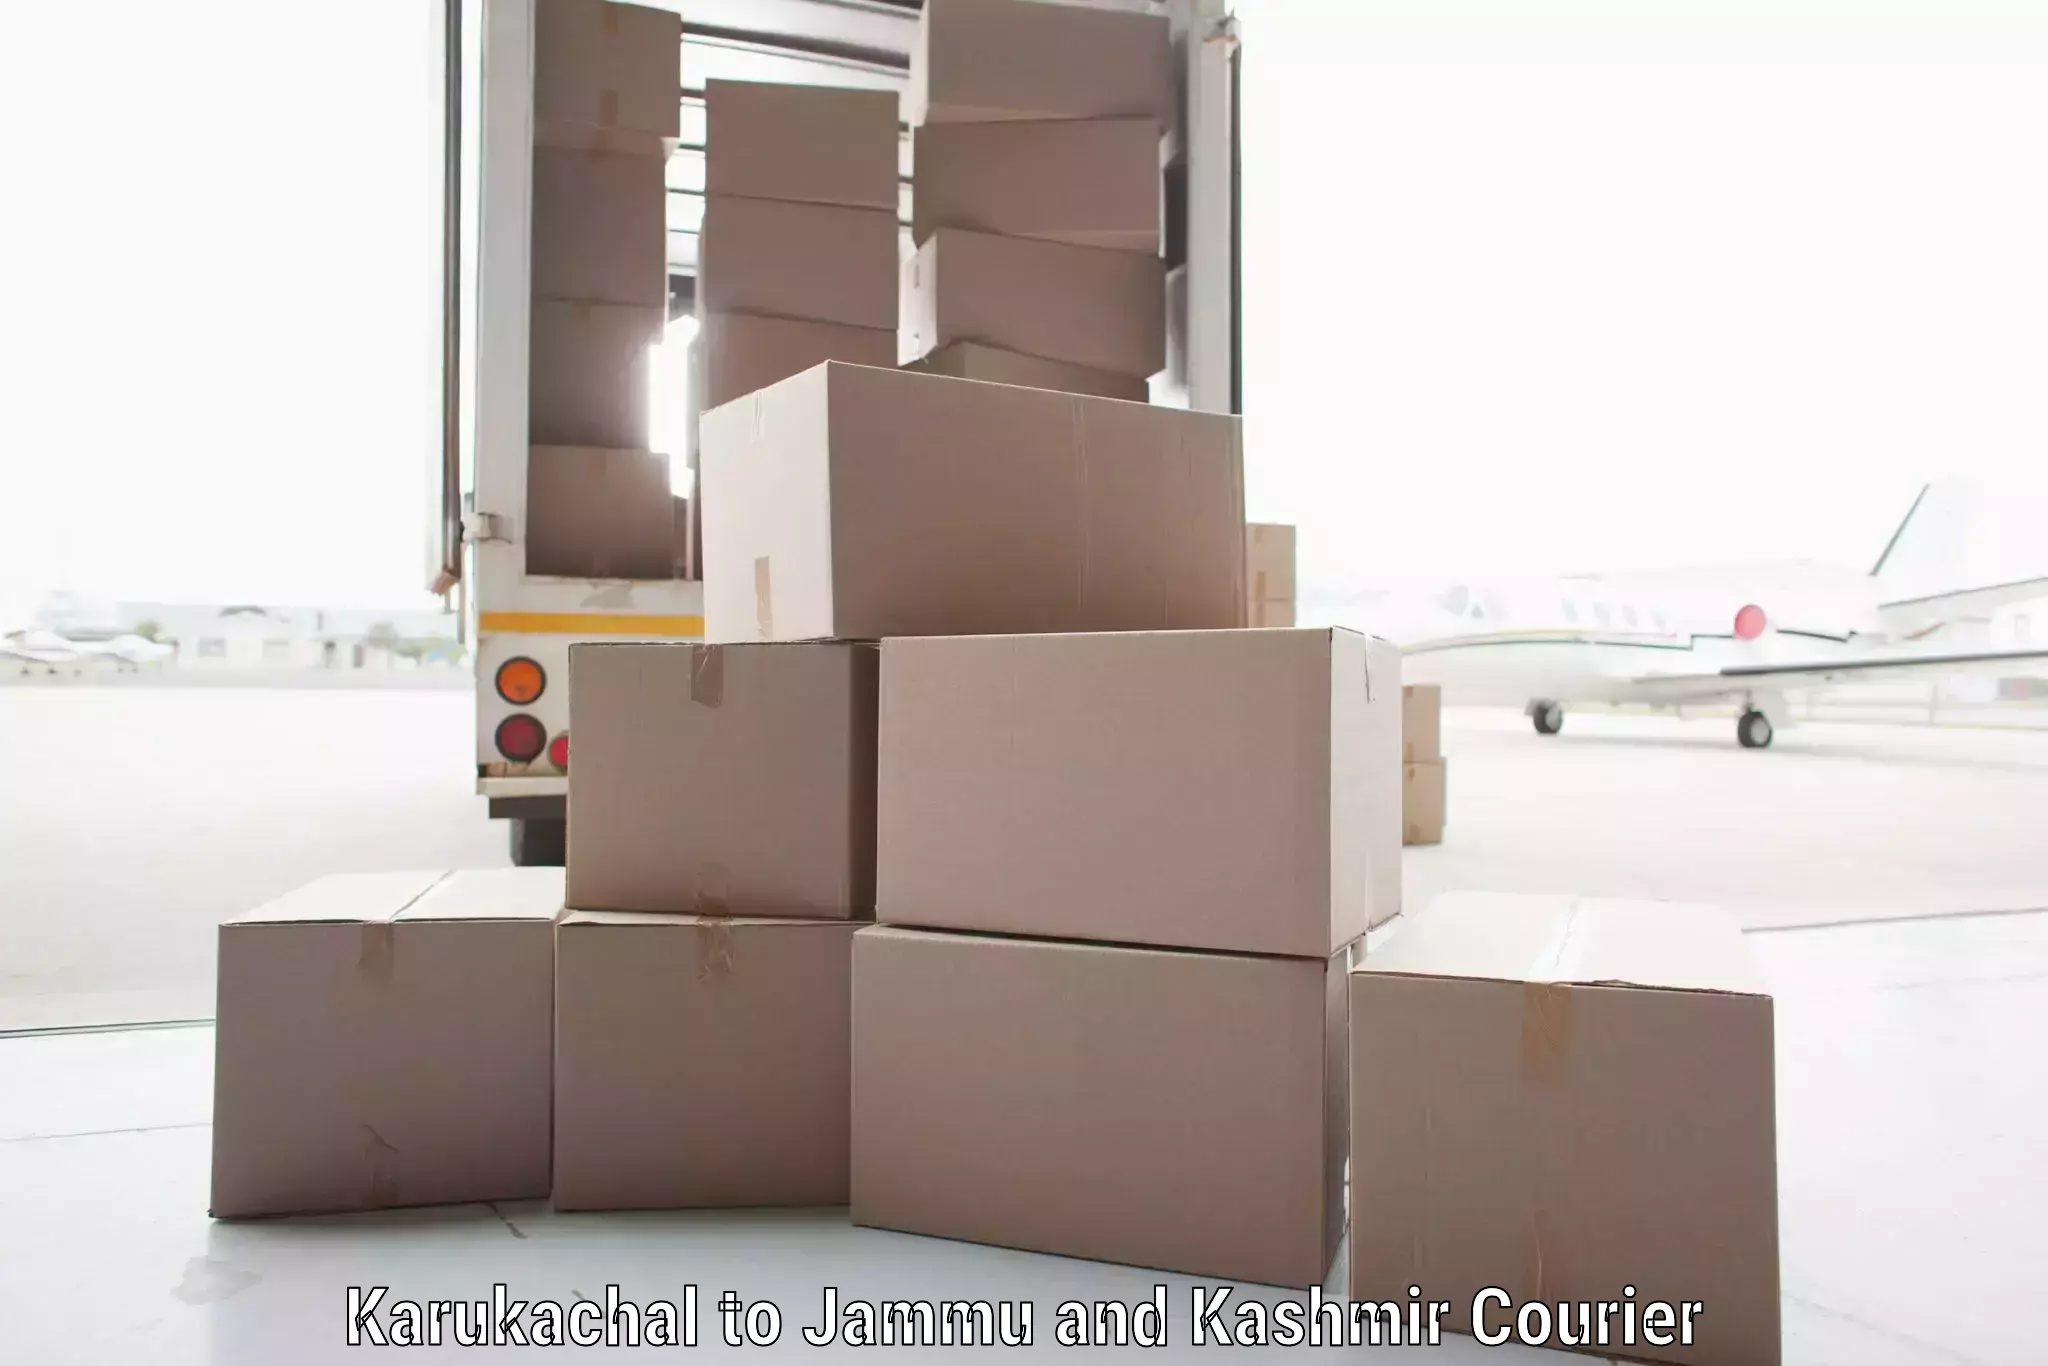 High-capacity parcel service Karukachal to Akhnoor